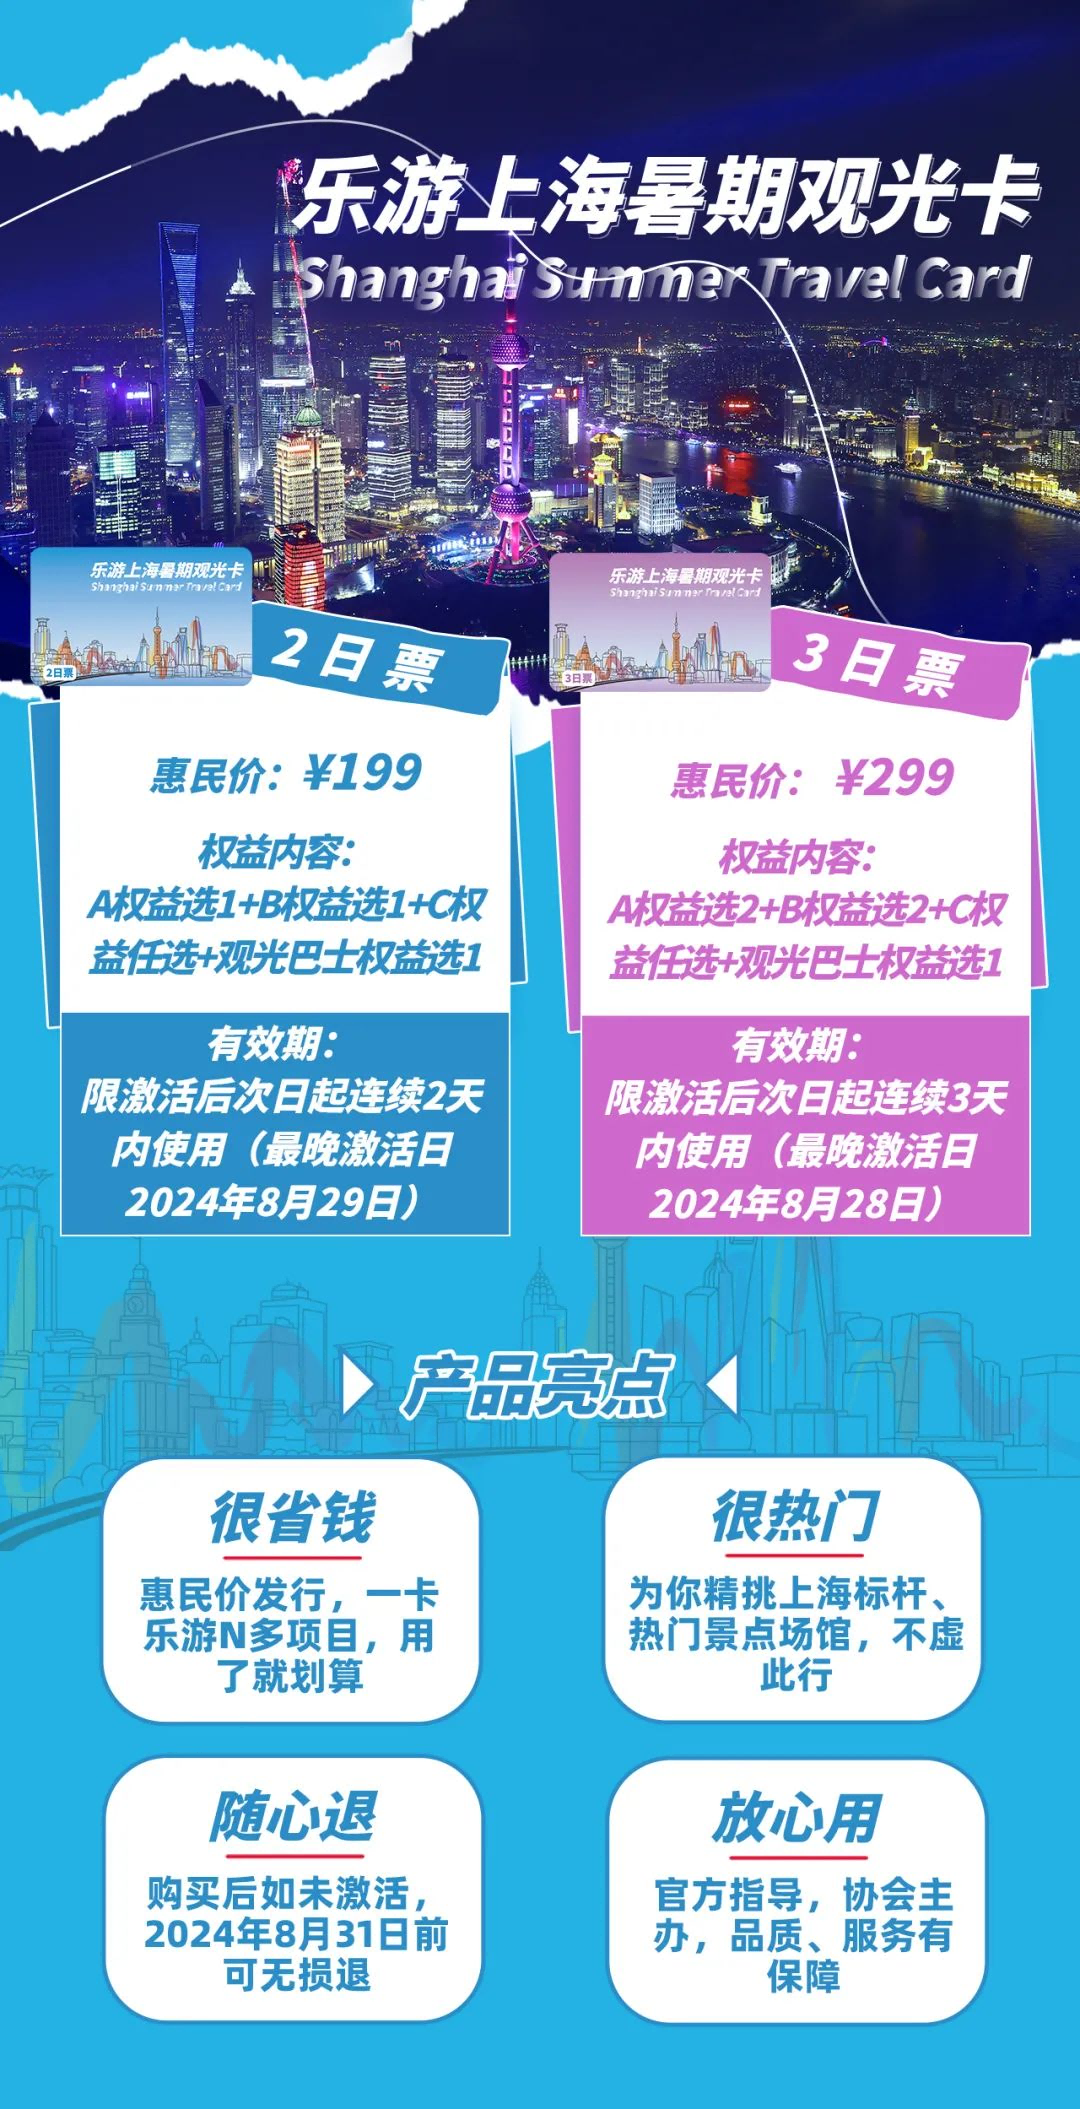 2024乐游上海暑期观光卡价格+权益清单+使用流程+游玩路线